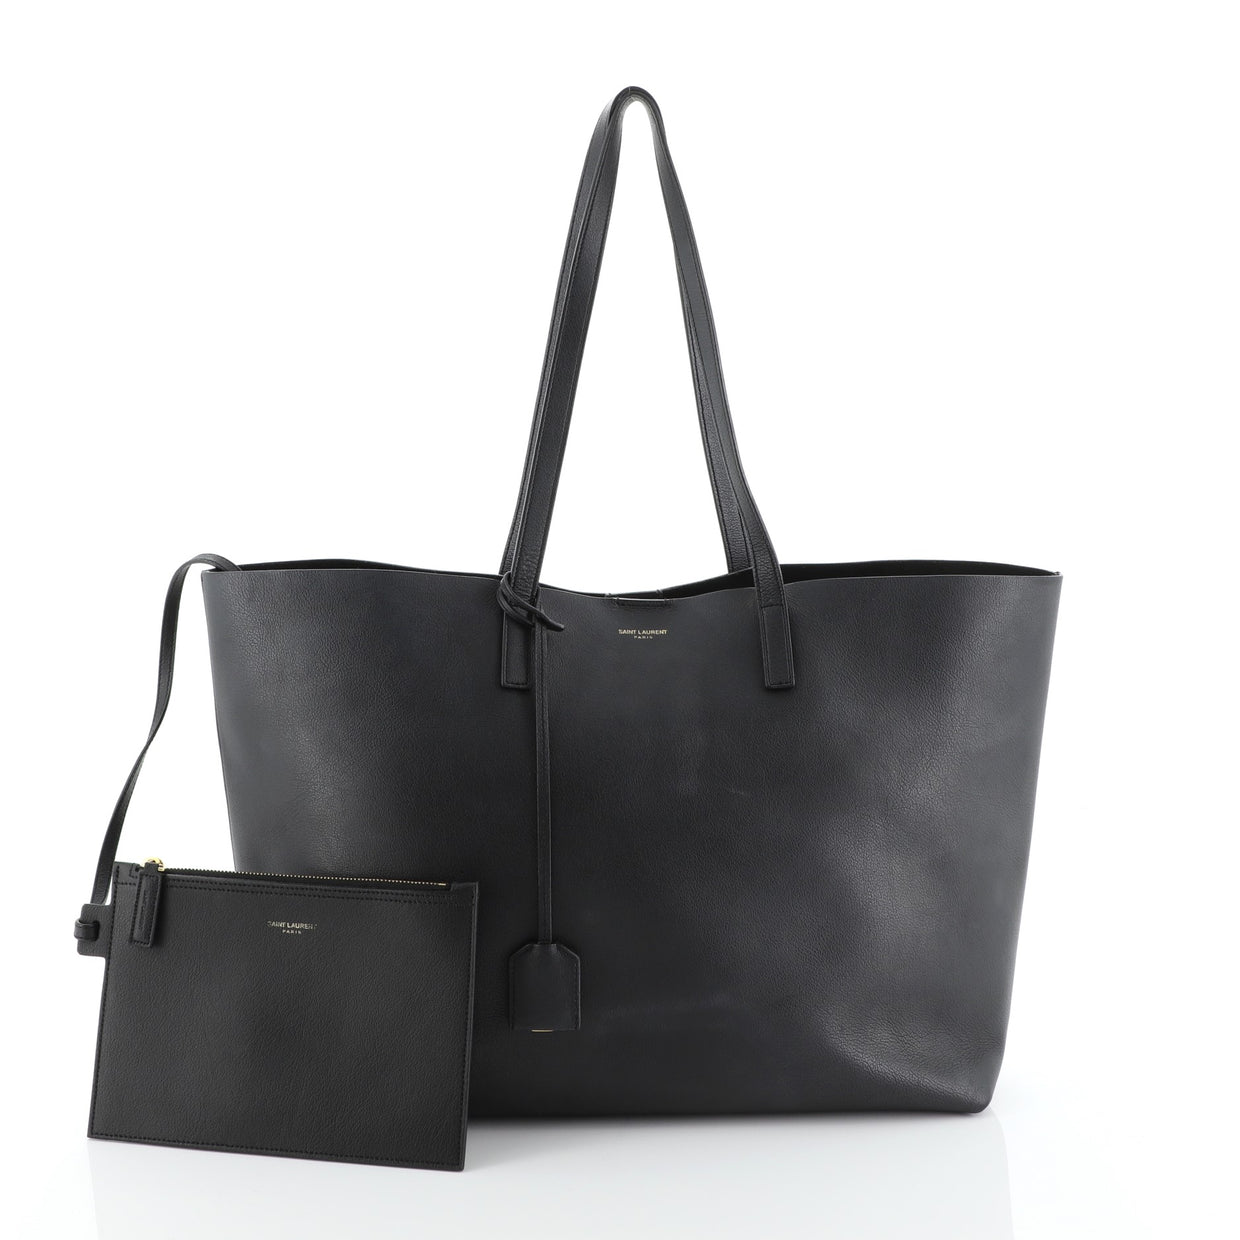 Saint Laurent Shopper Tote Leather Large Black 4889133